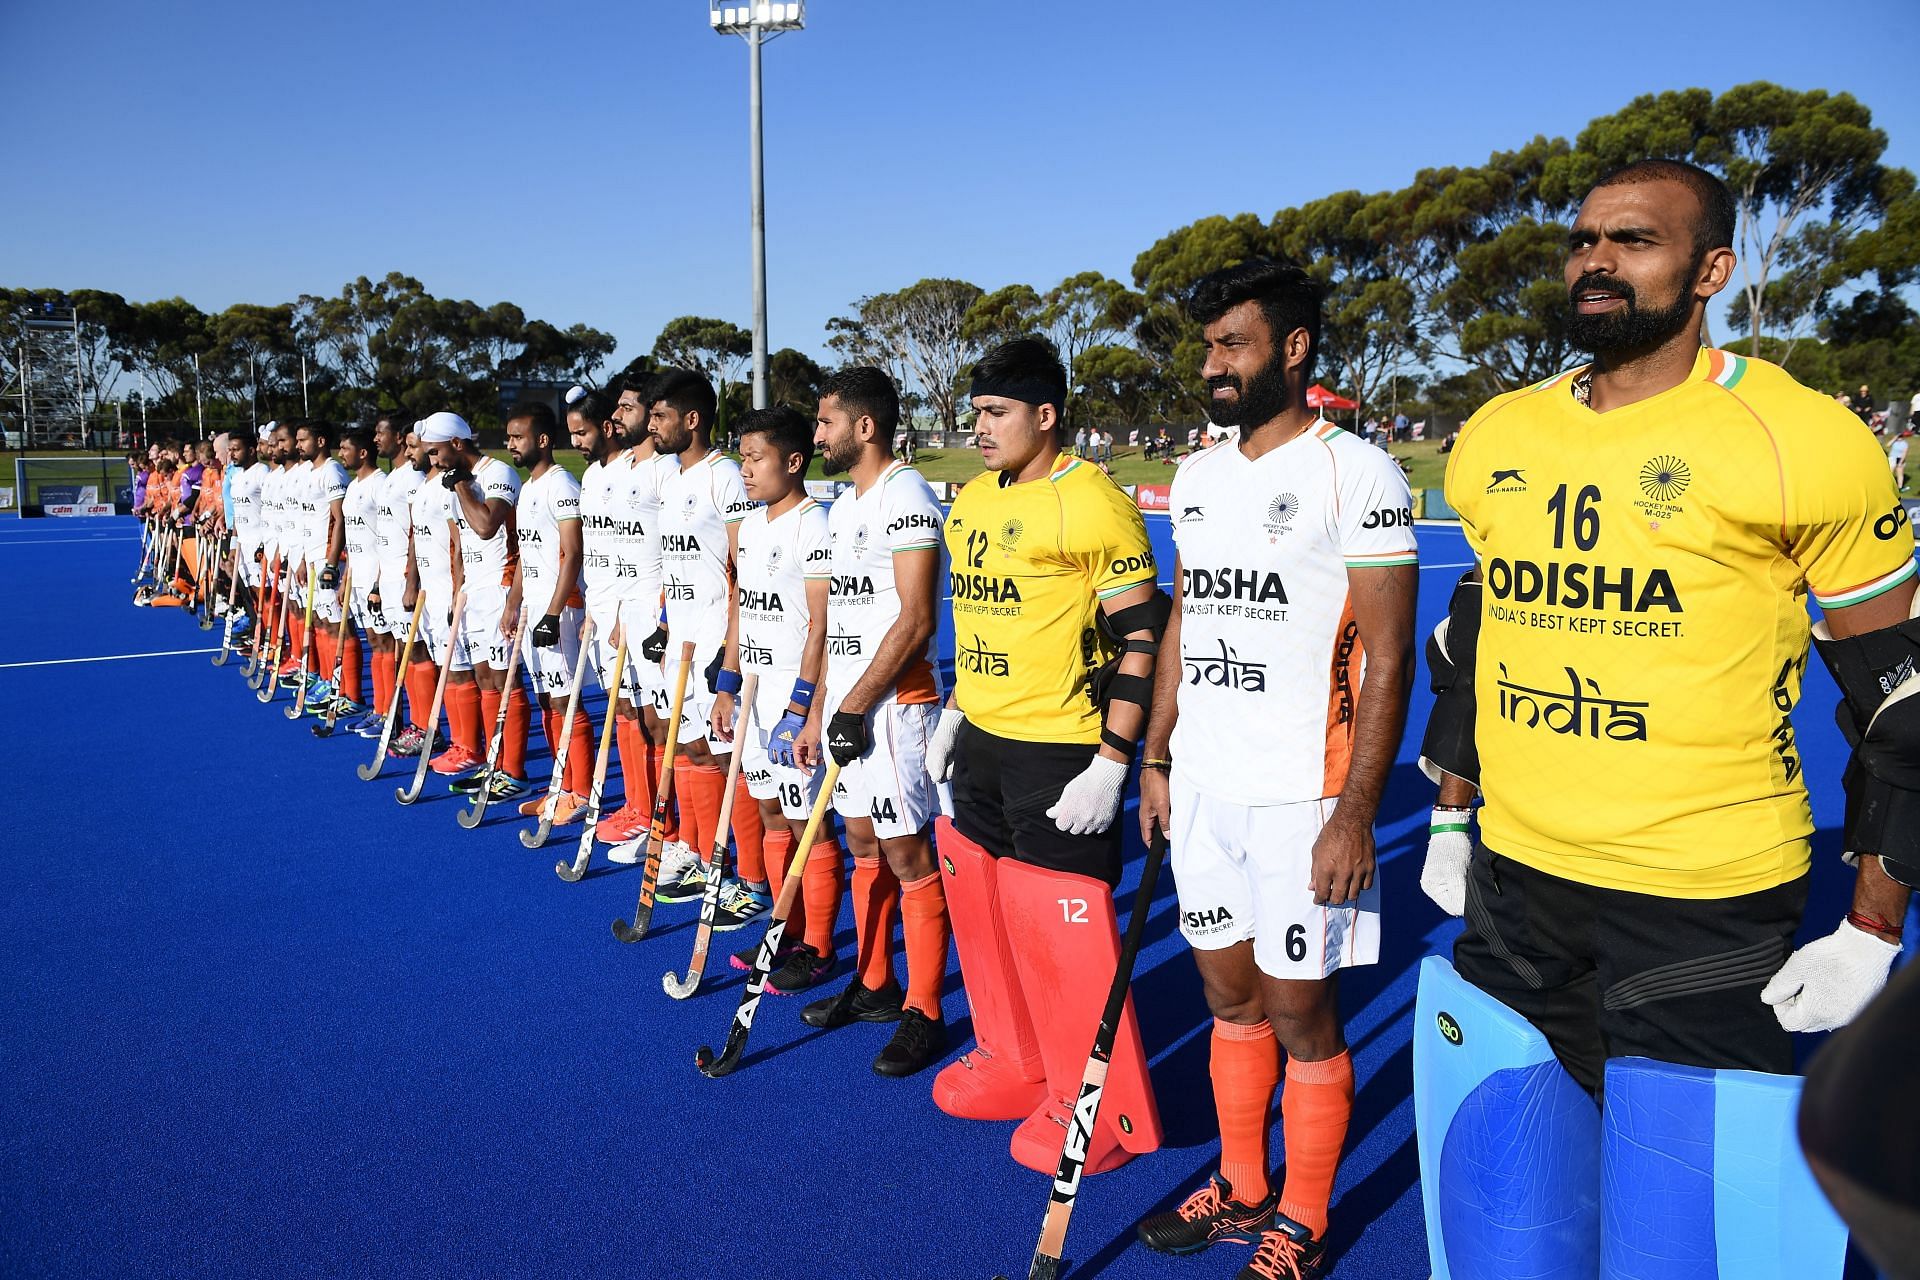 Australia v India International Hockey Test Series: Game 3